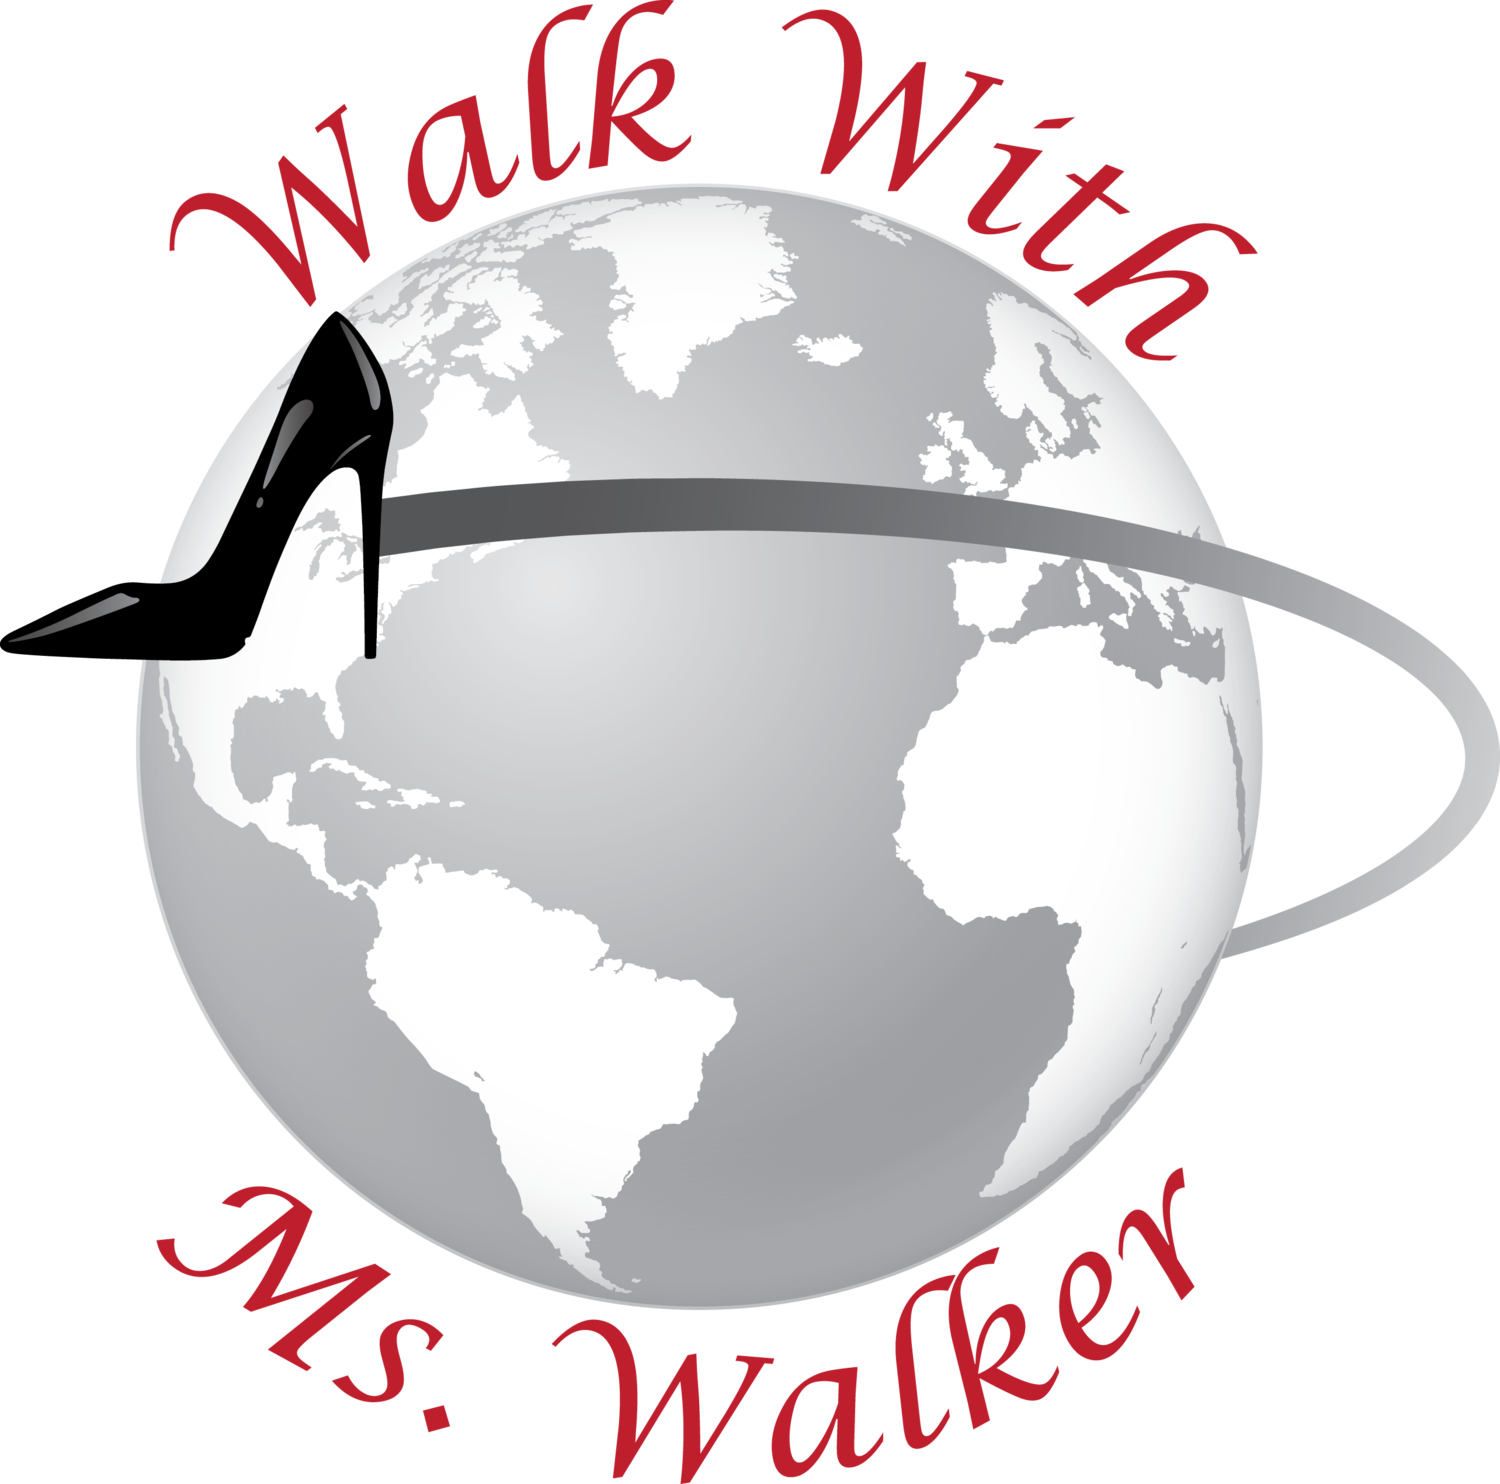 Walk With Ms. Walker